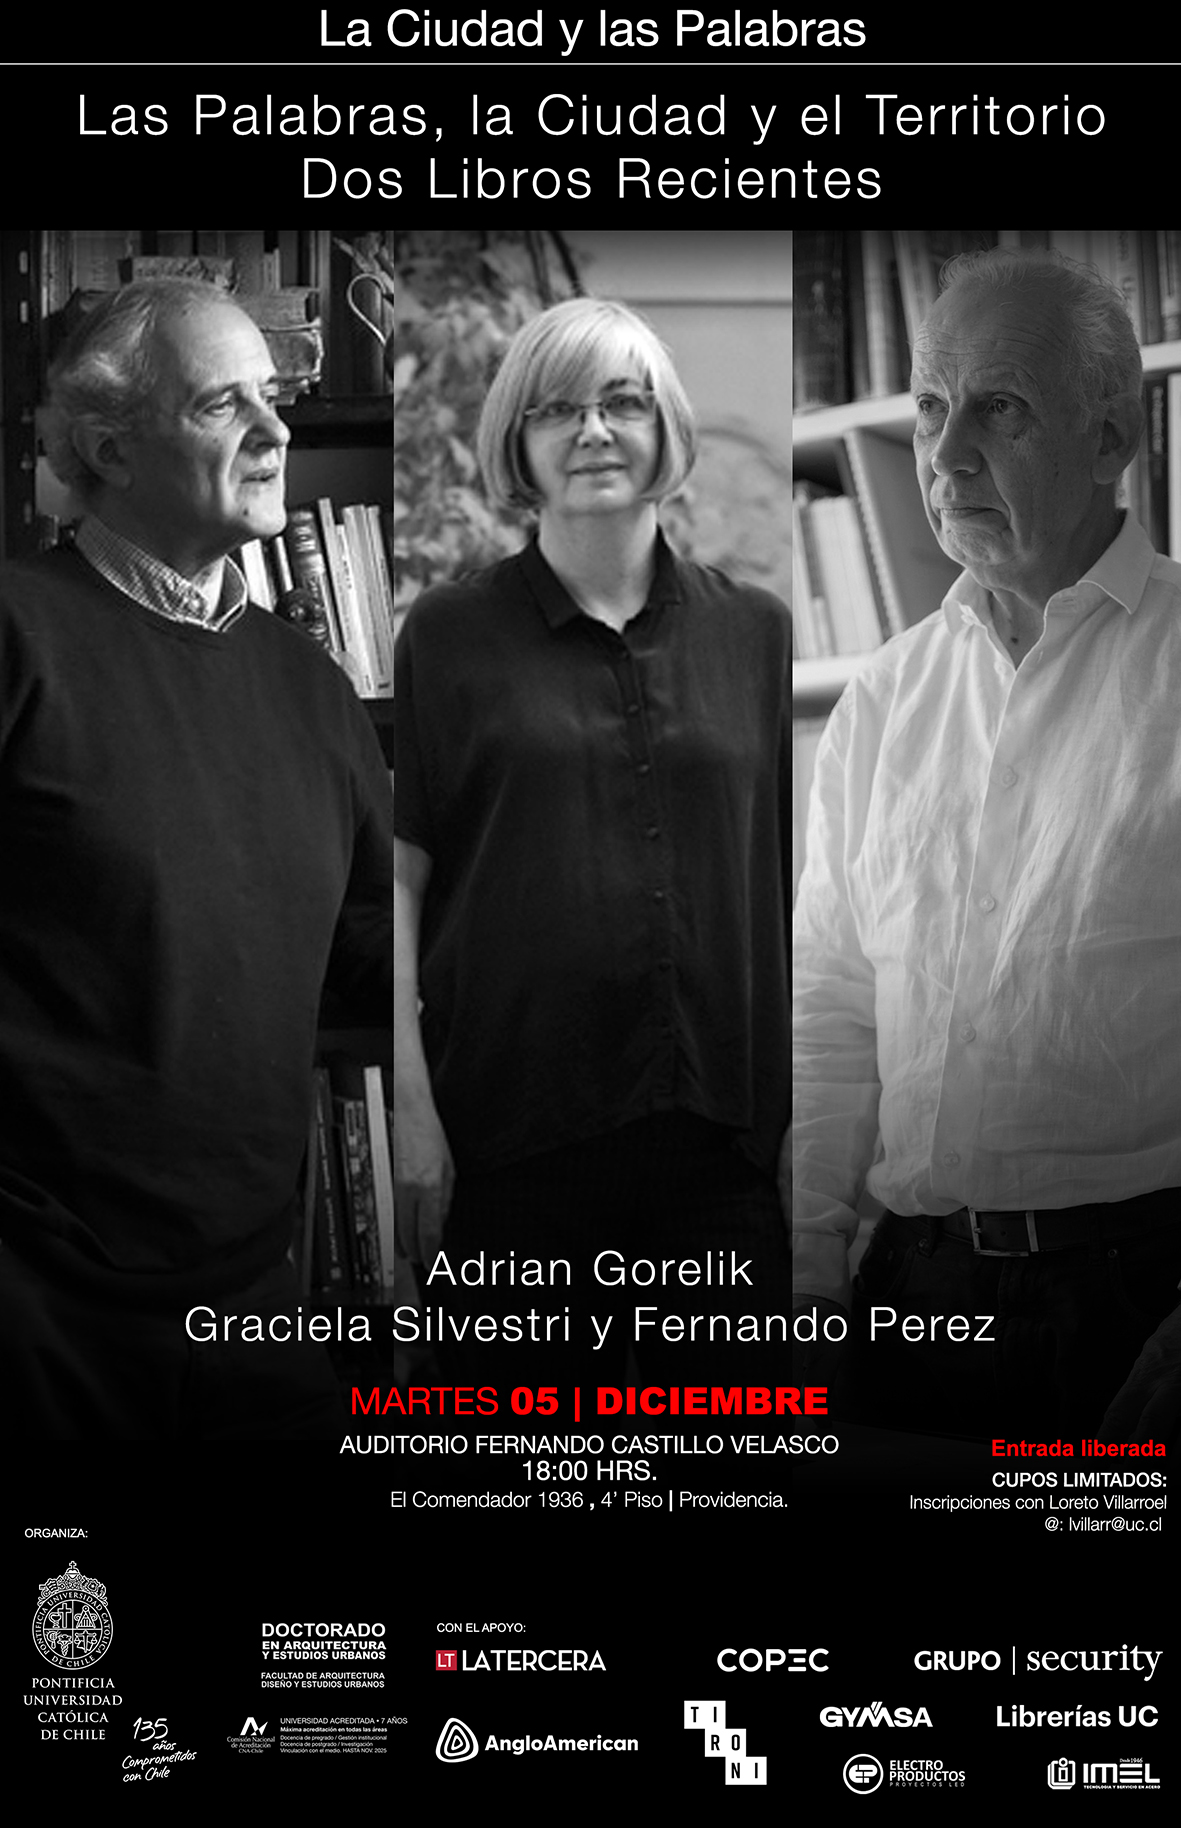 La Ciudad y las Palabras Adrián Gorelik, Graciela Silvestri y Fernando Pérez